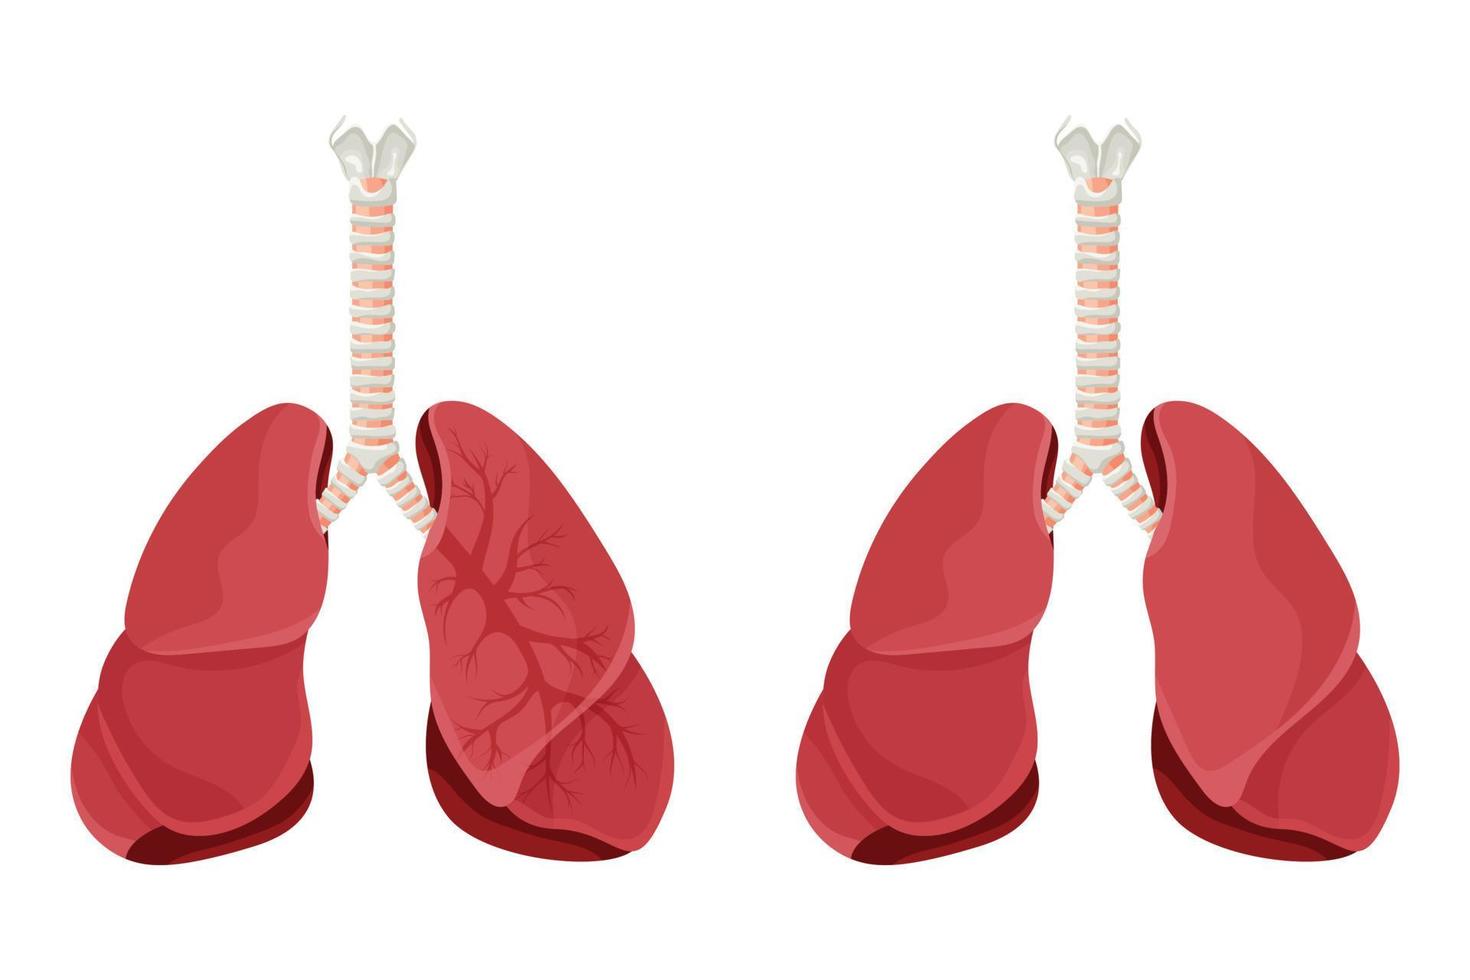 diagram van menselijke longen en luchtpijp, ademhalingssysteem, gezonde longen icoon. vectorillustratie geïsoleerd op een witte achtergrond. vector